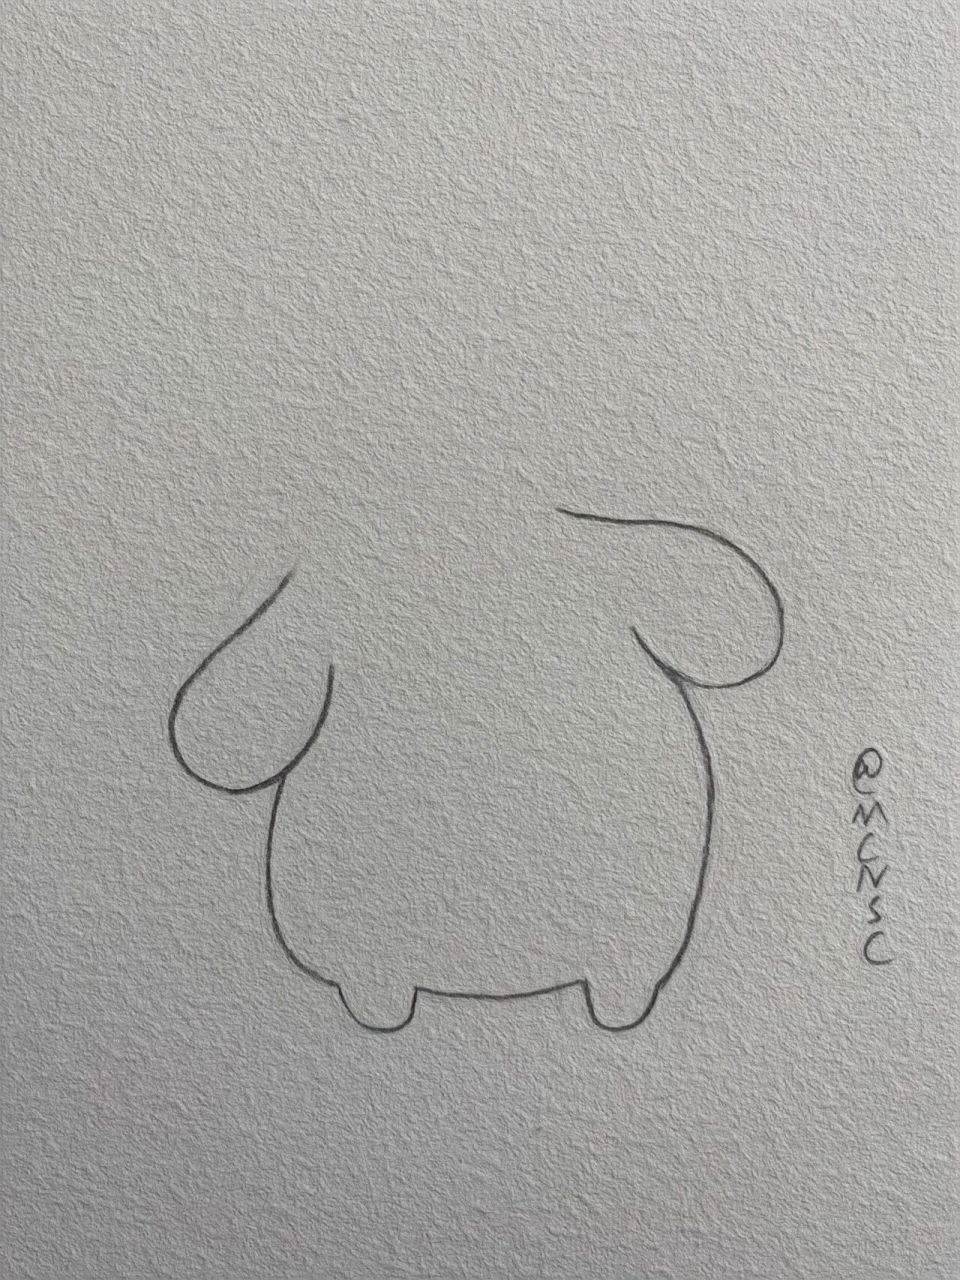 布丁狗的画法简笔画图片